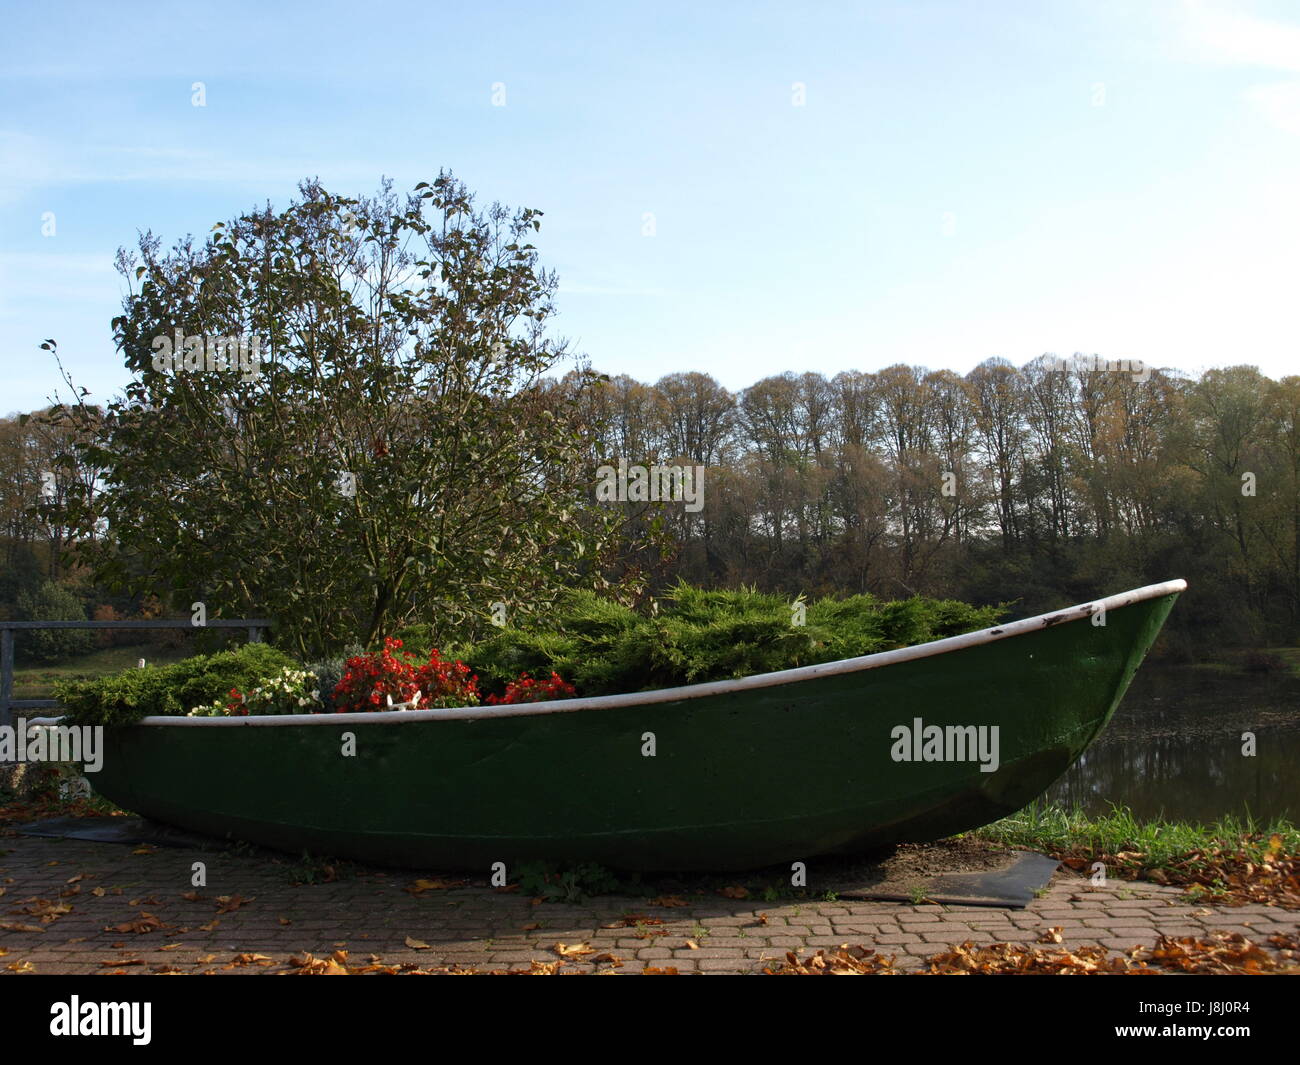 Barca a remi, piantagione, barca a vela, barca a vela, barca, natante, letto floreale, Foto Stock